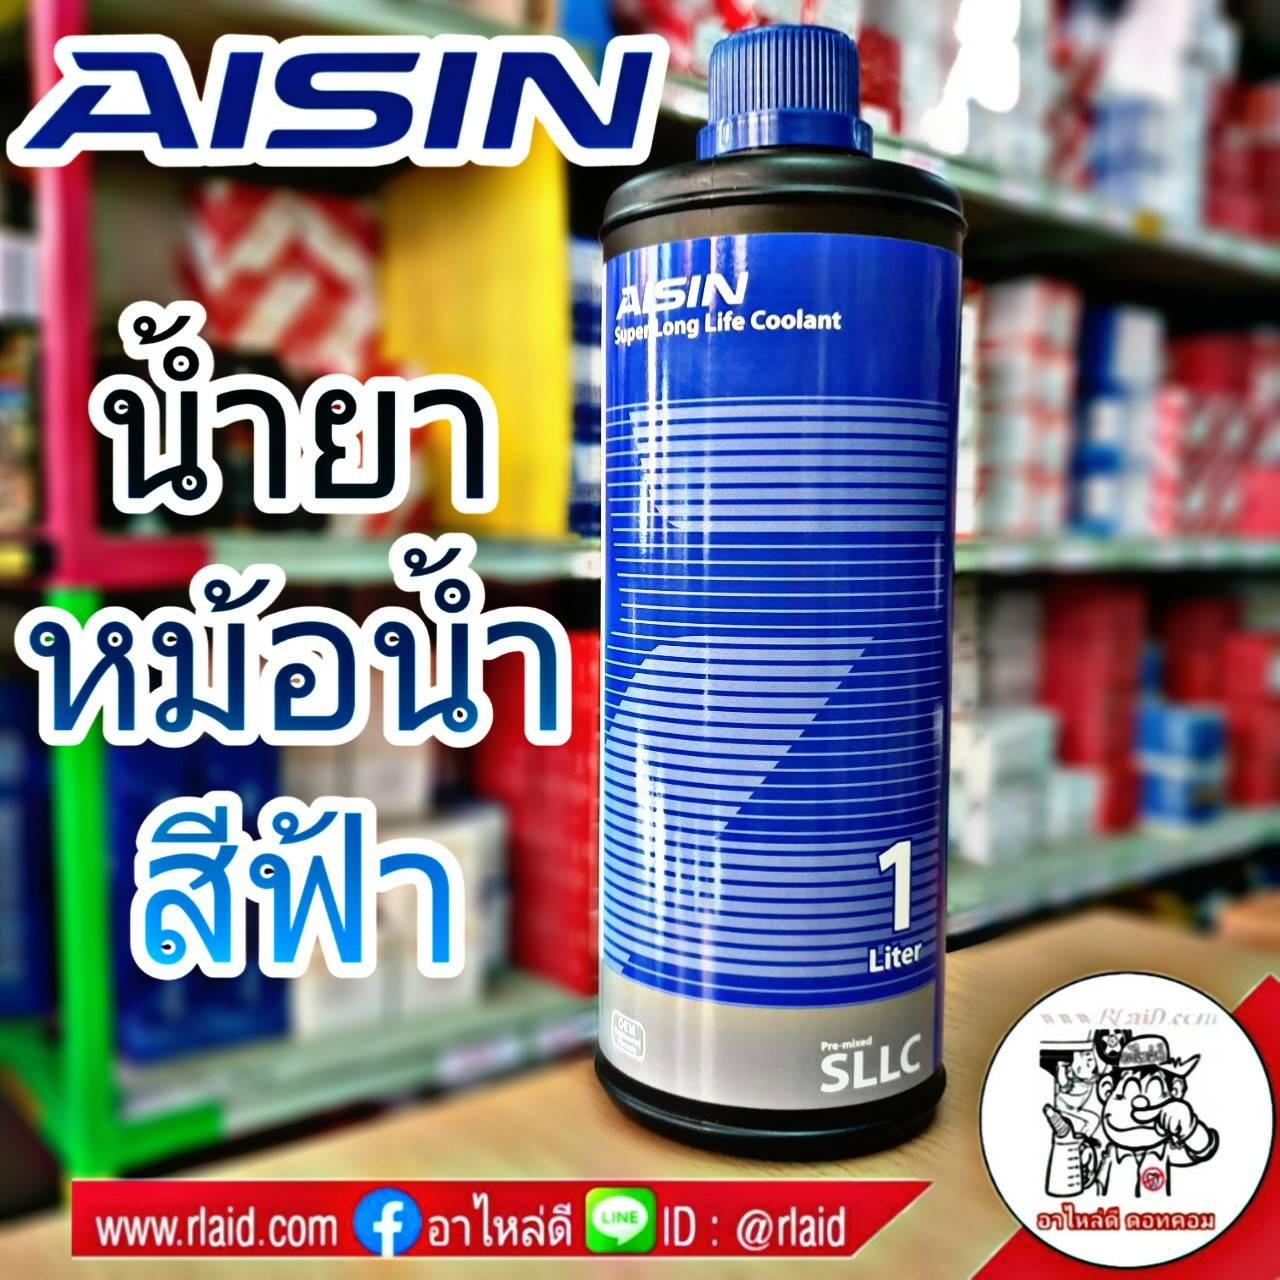 AISIN คูลแลนท์ ไอซิน สีฟ้า 1ลิตร น้ำยาหม้อน้ำ น้ำยาเติมหม้อน้ำ น้ำยาหล่อเย็น Coolant